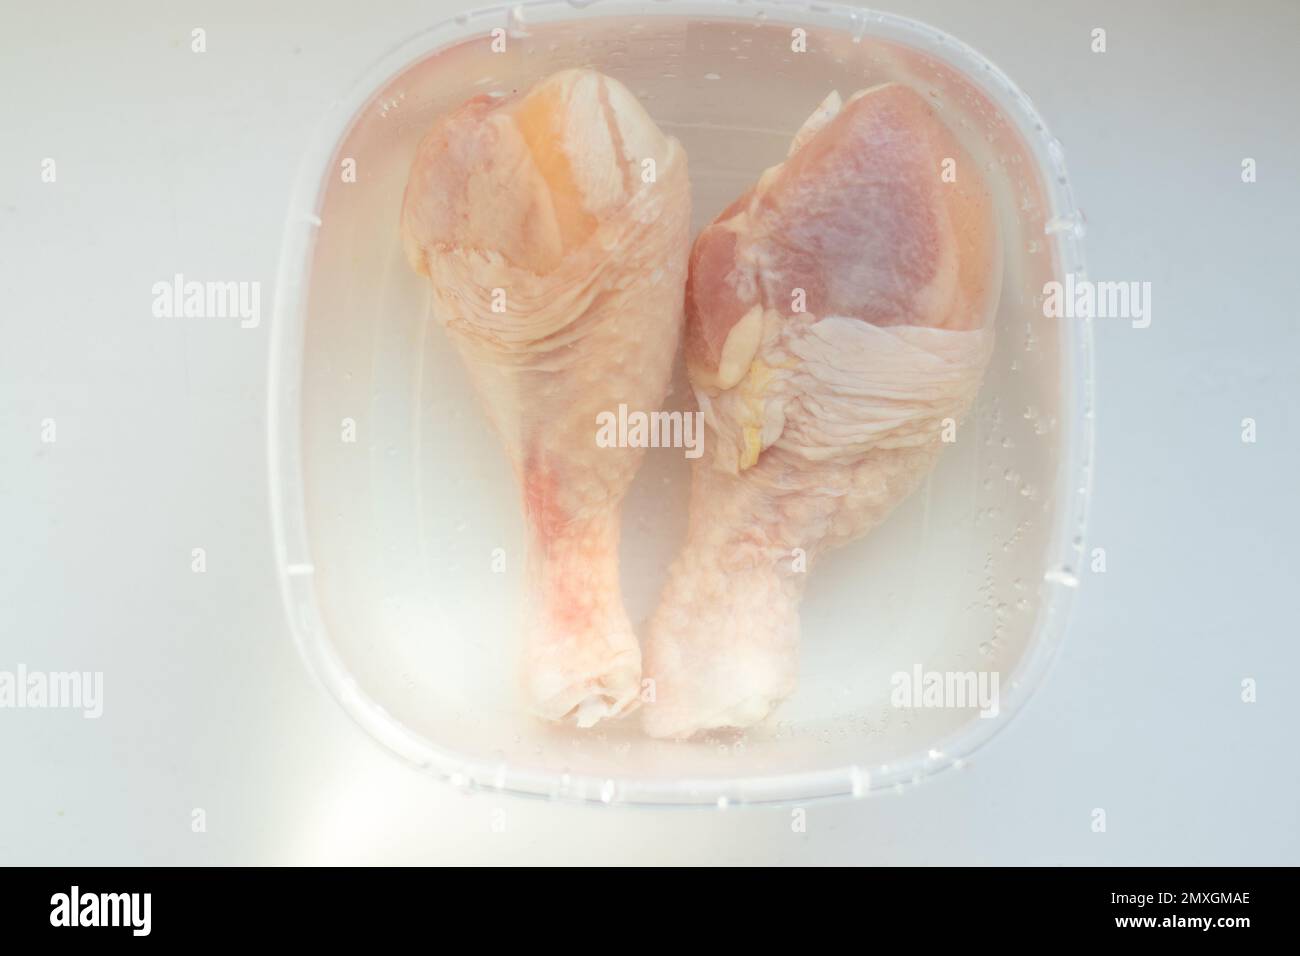 due bastoncini di pollo crudi si trovano in un piatto con acqua Foto Stock